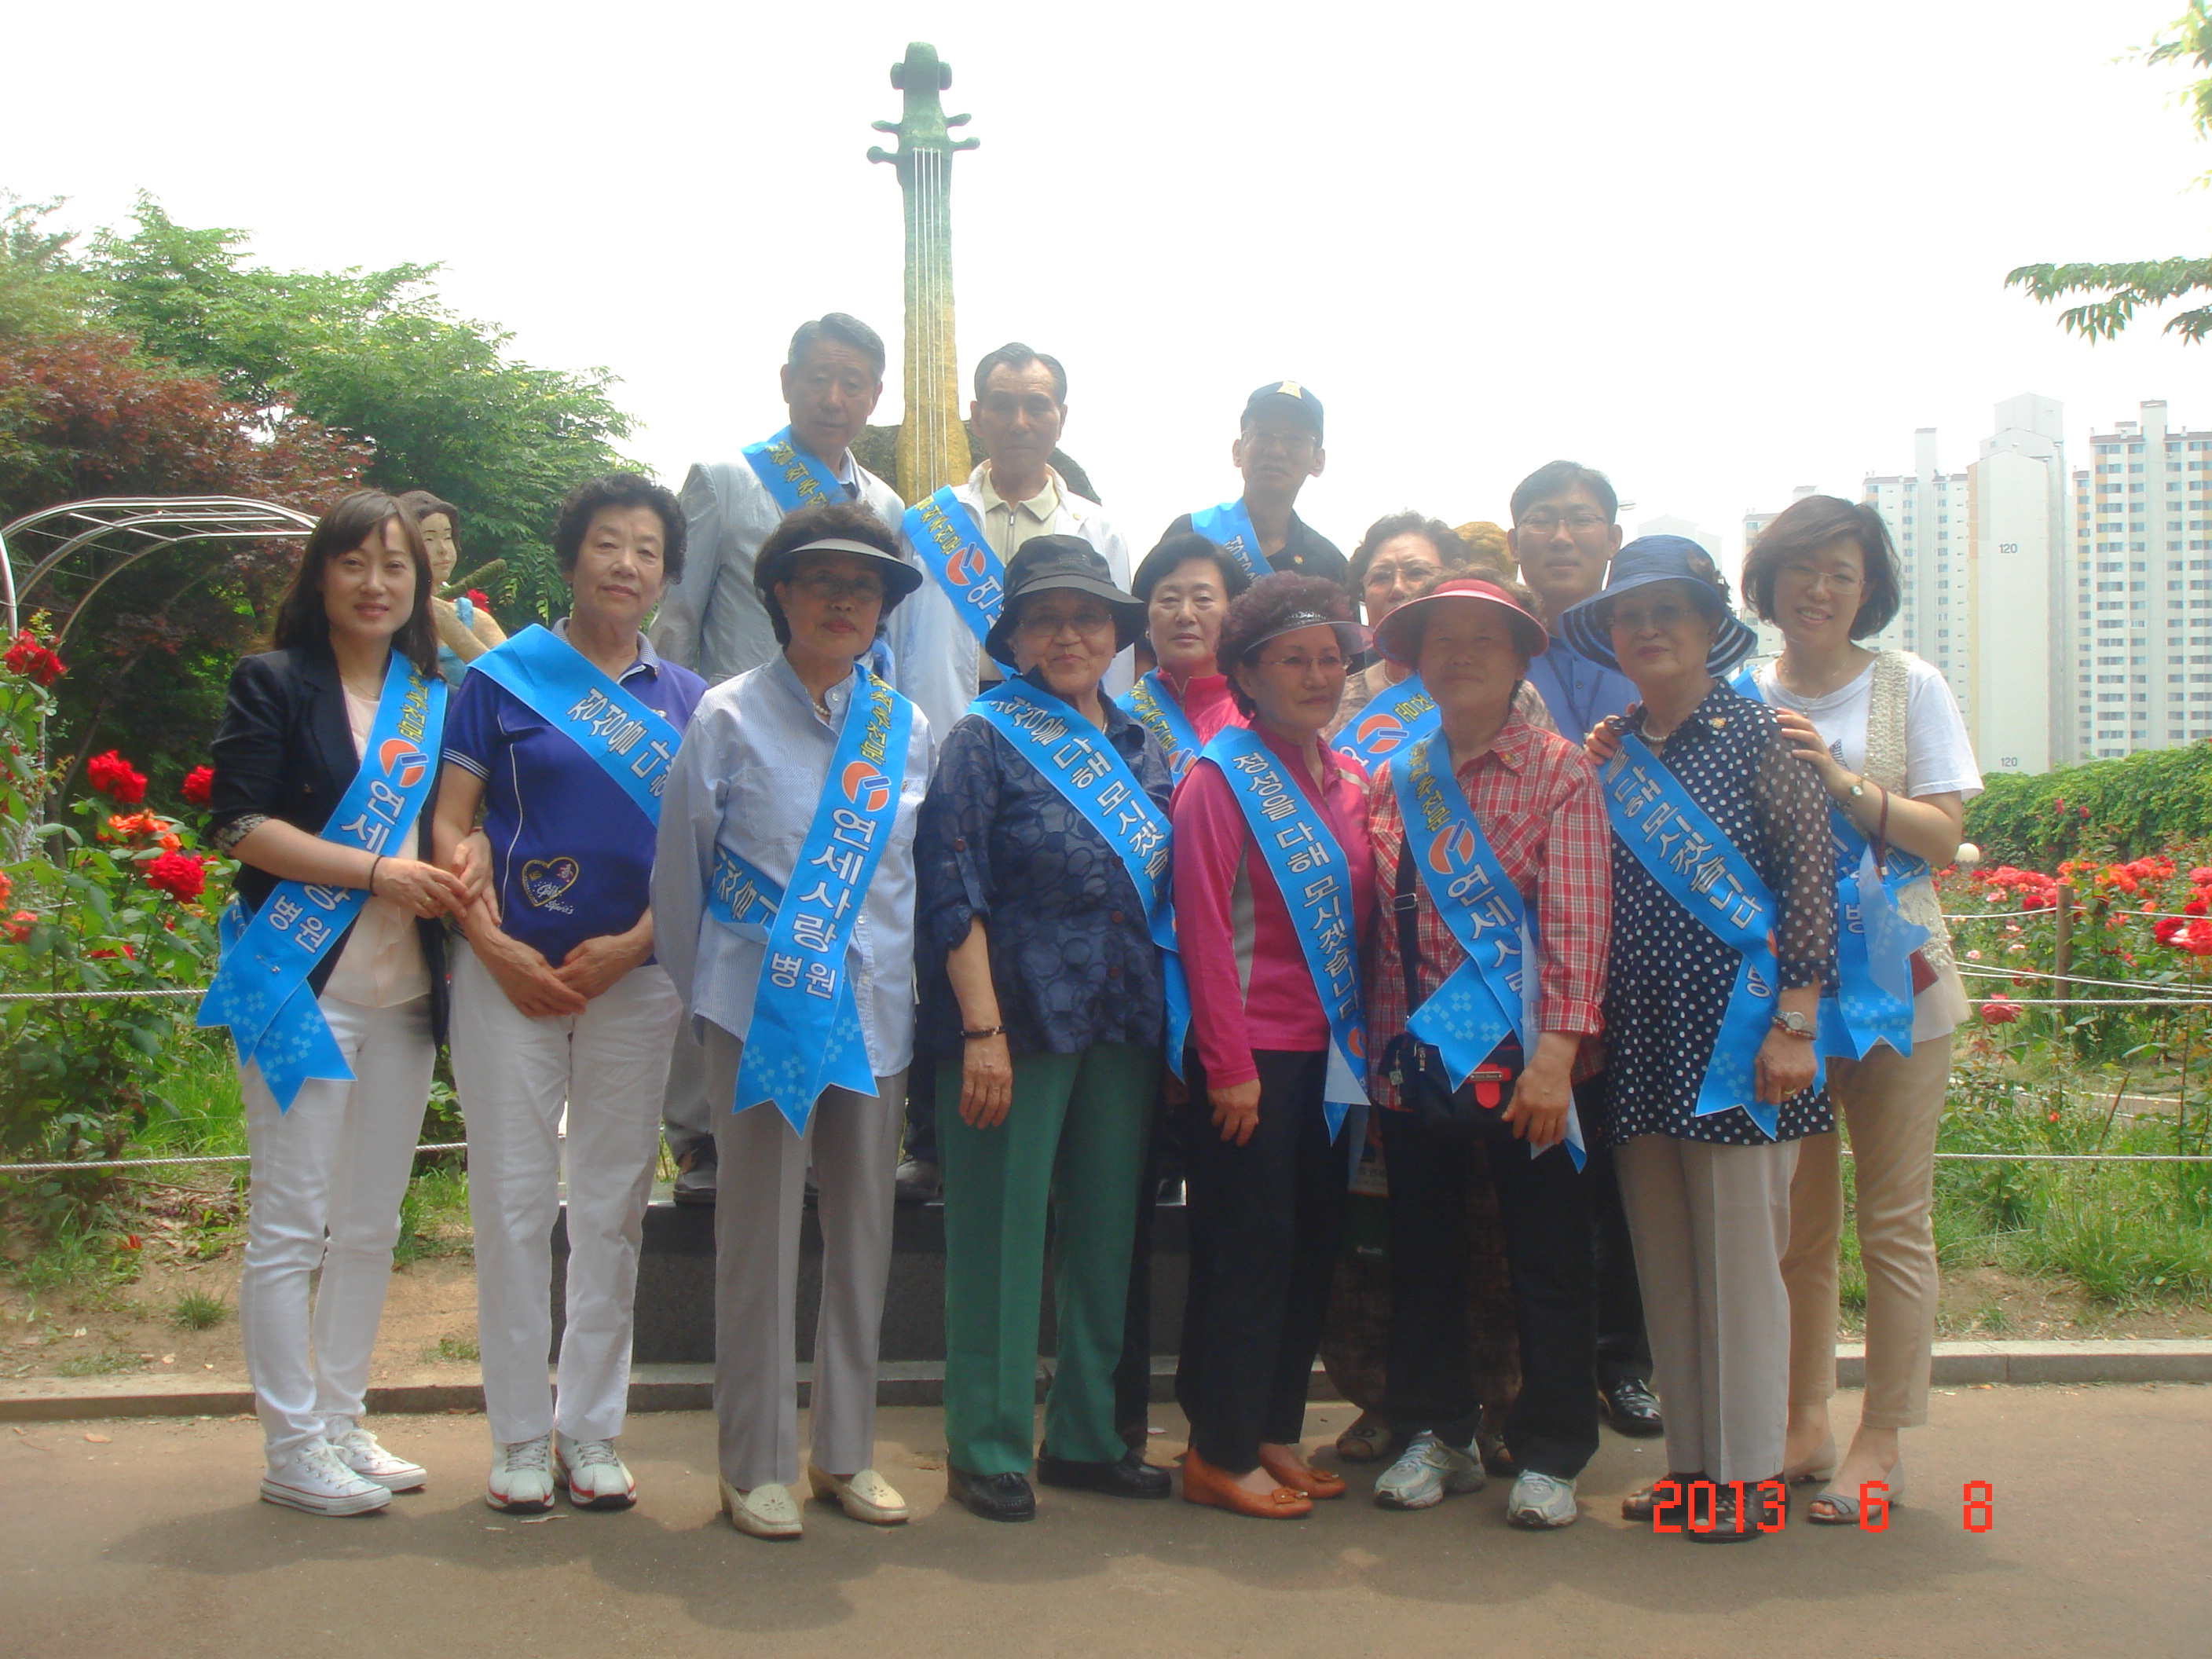 2013년 6월 8일 - `사랑회` 중랑천로공원 봉사활동 게시글의 1번째 첨부파일입니다.